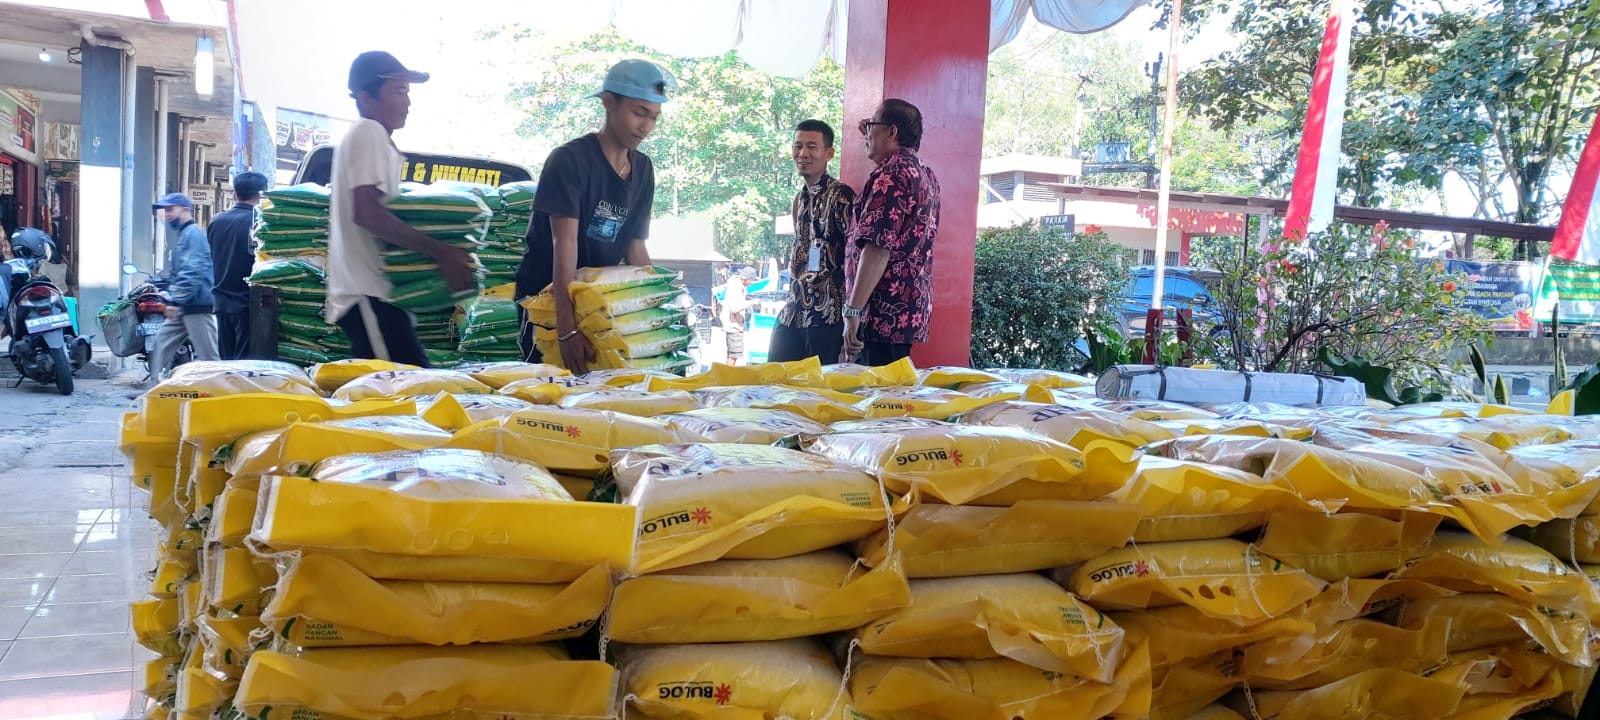 210 Ton Beras OP Didistribusikan, Belum Mampu Stabilkan Harga di Pasaran